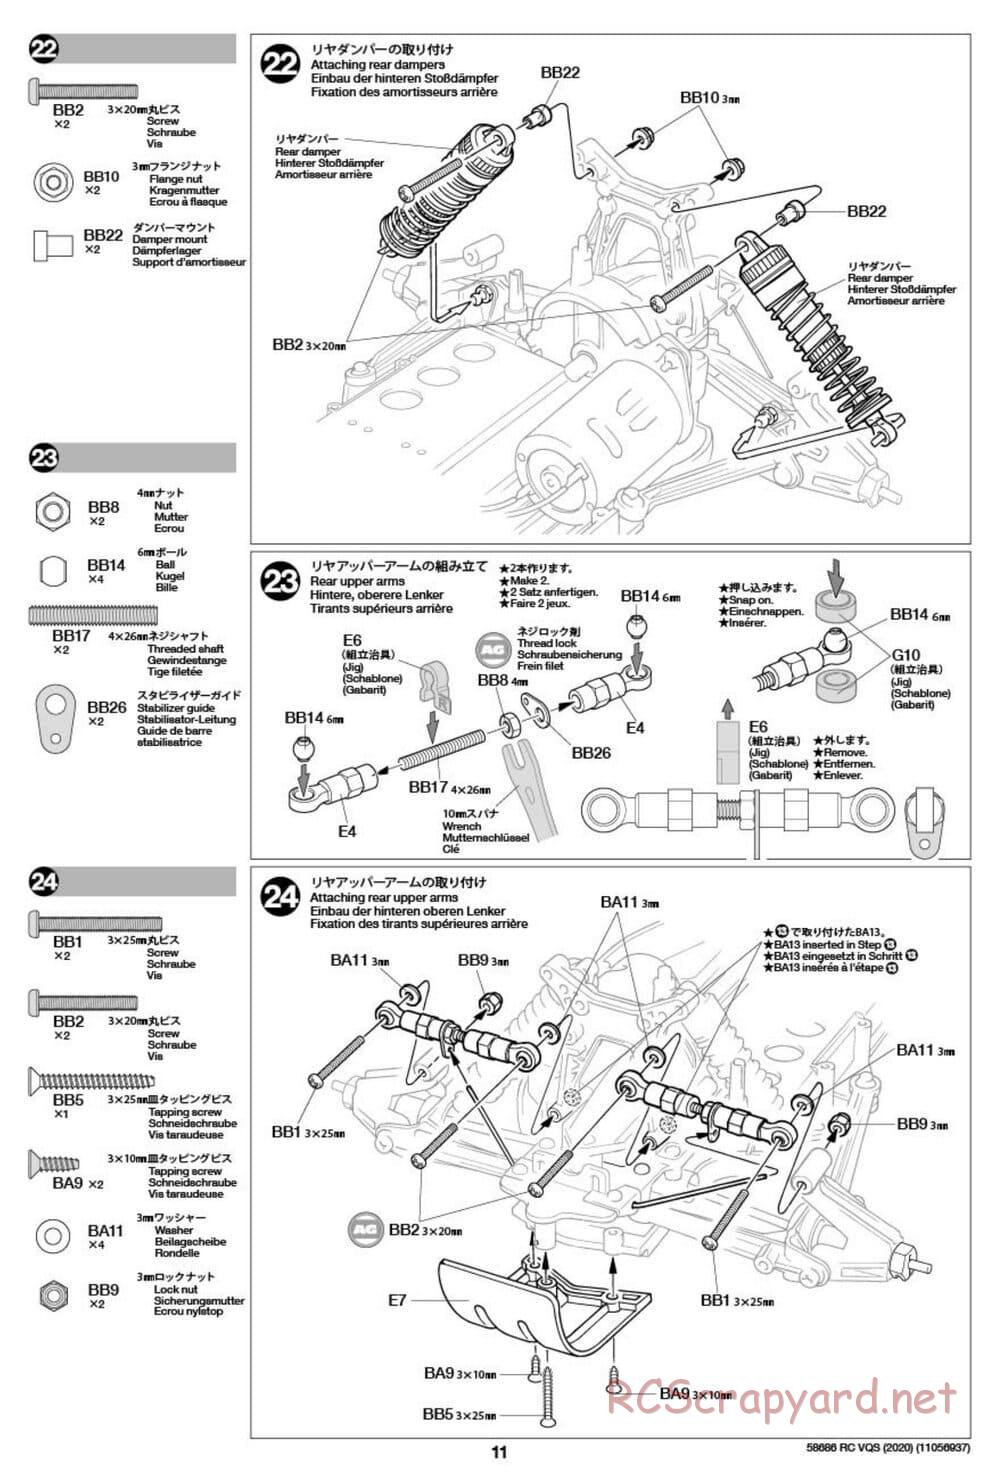 Tamiya - VQS (2020) - AV Chassis - Manual - Page 11